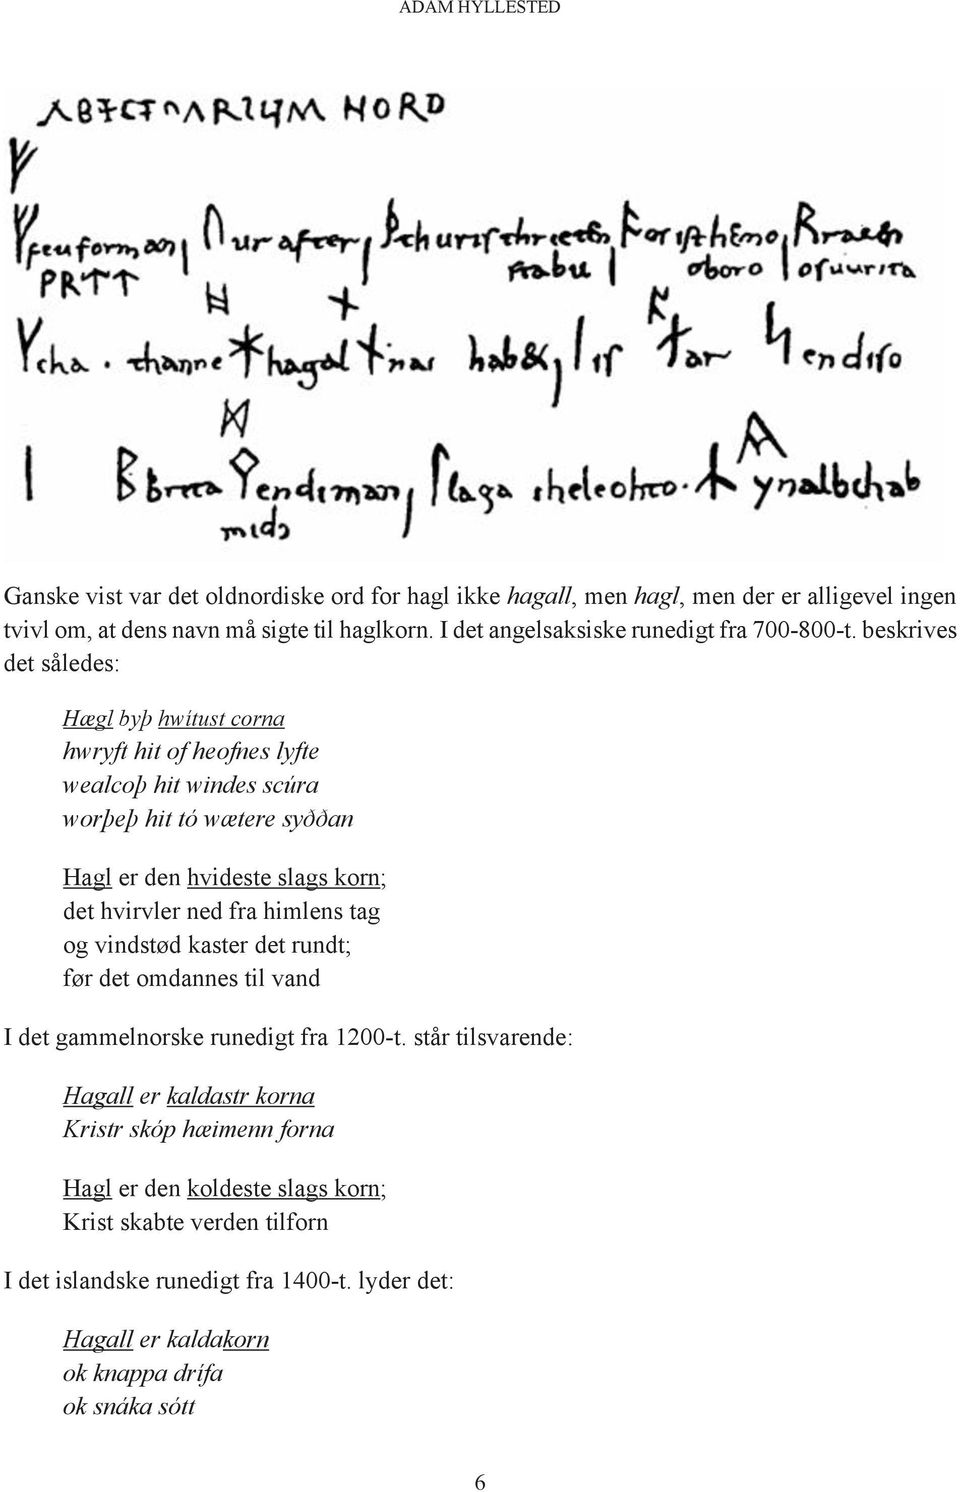 Ældre germansk sproghistorie. Et uformelt minisymposium - PDF ...